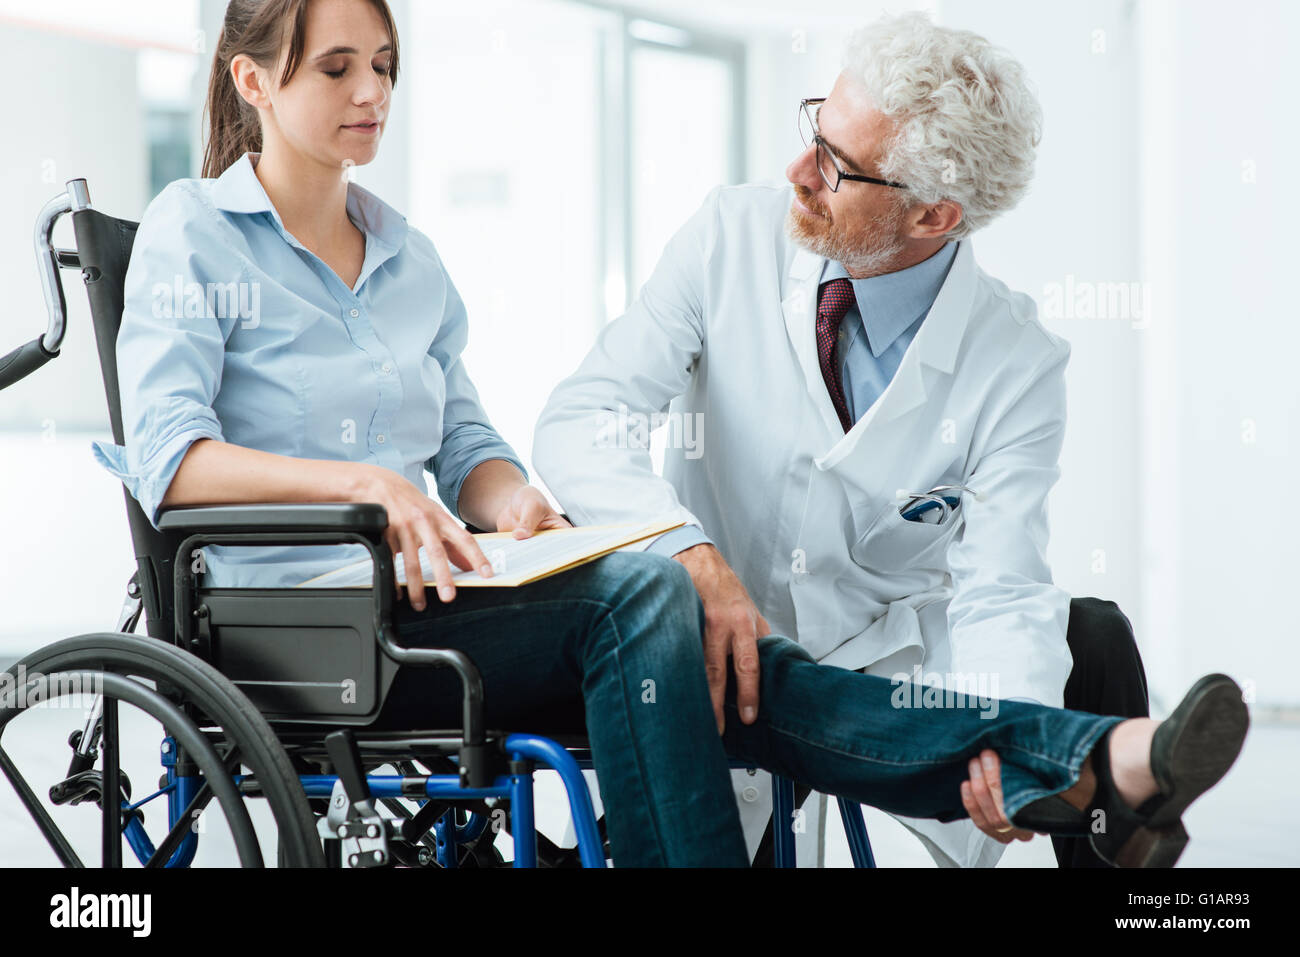 Medico di visitare una donna non valido in carrozzella, egli sta esaminando la sua gamba, riabilitazione e concetto physioteraphy Foto Stock